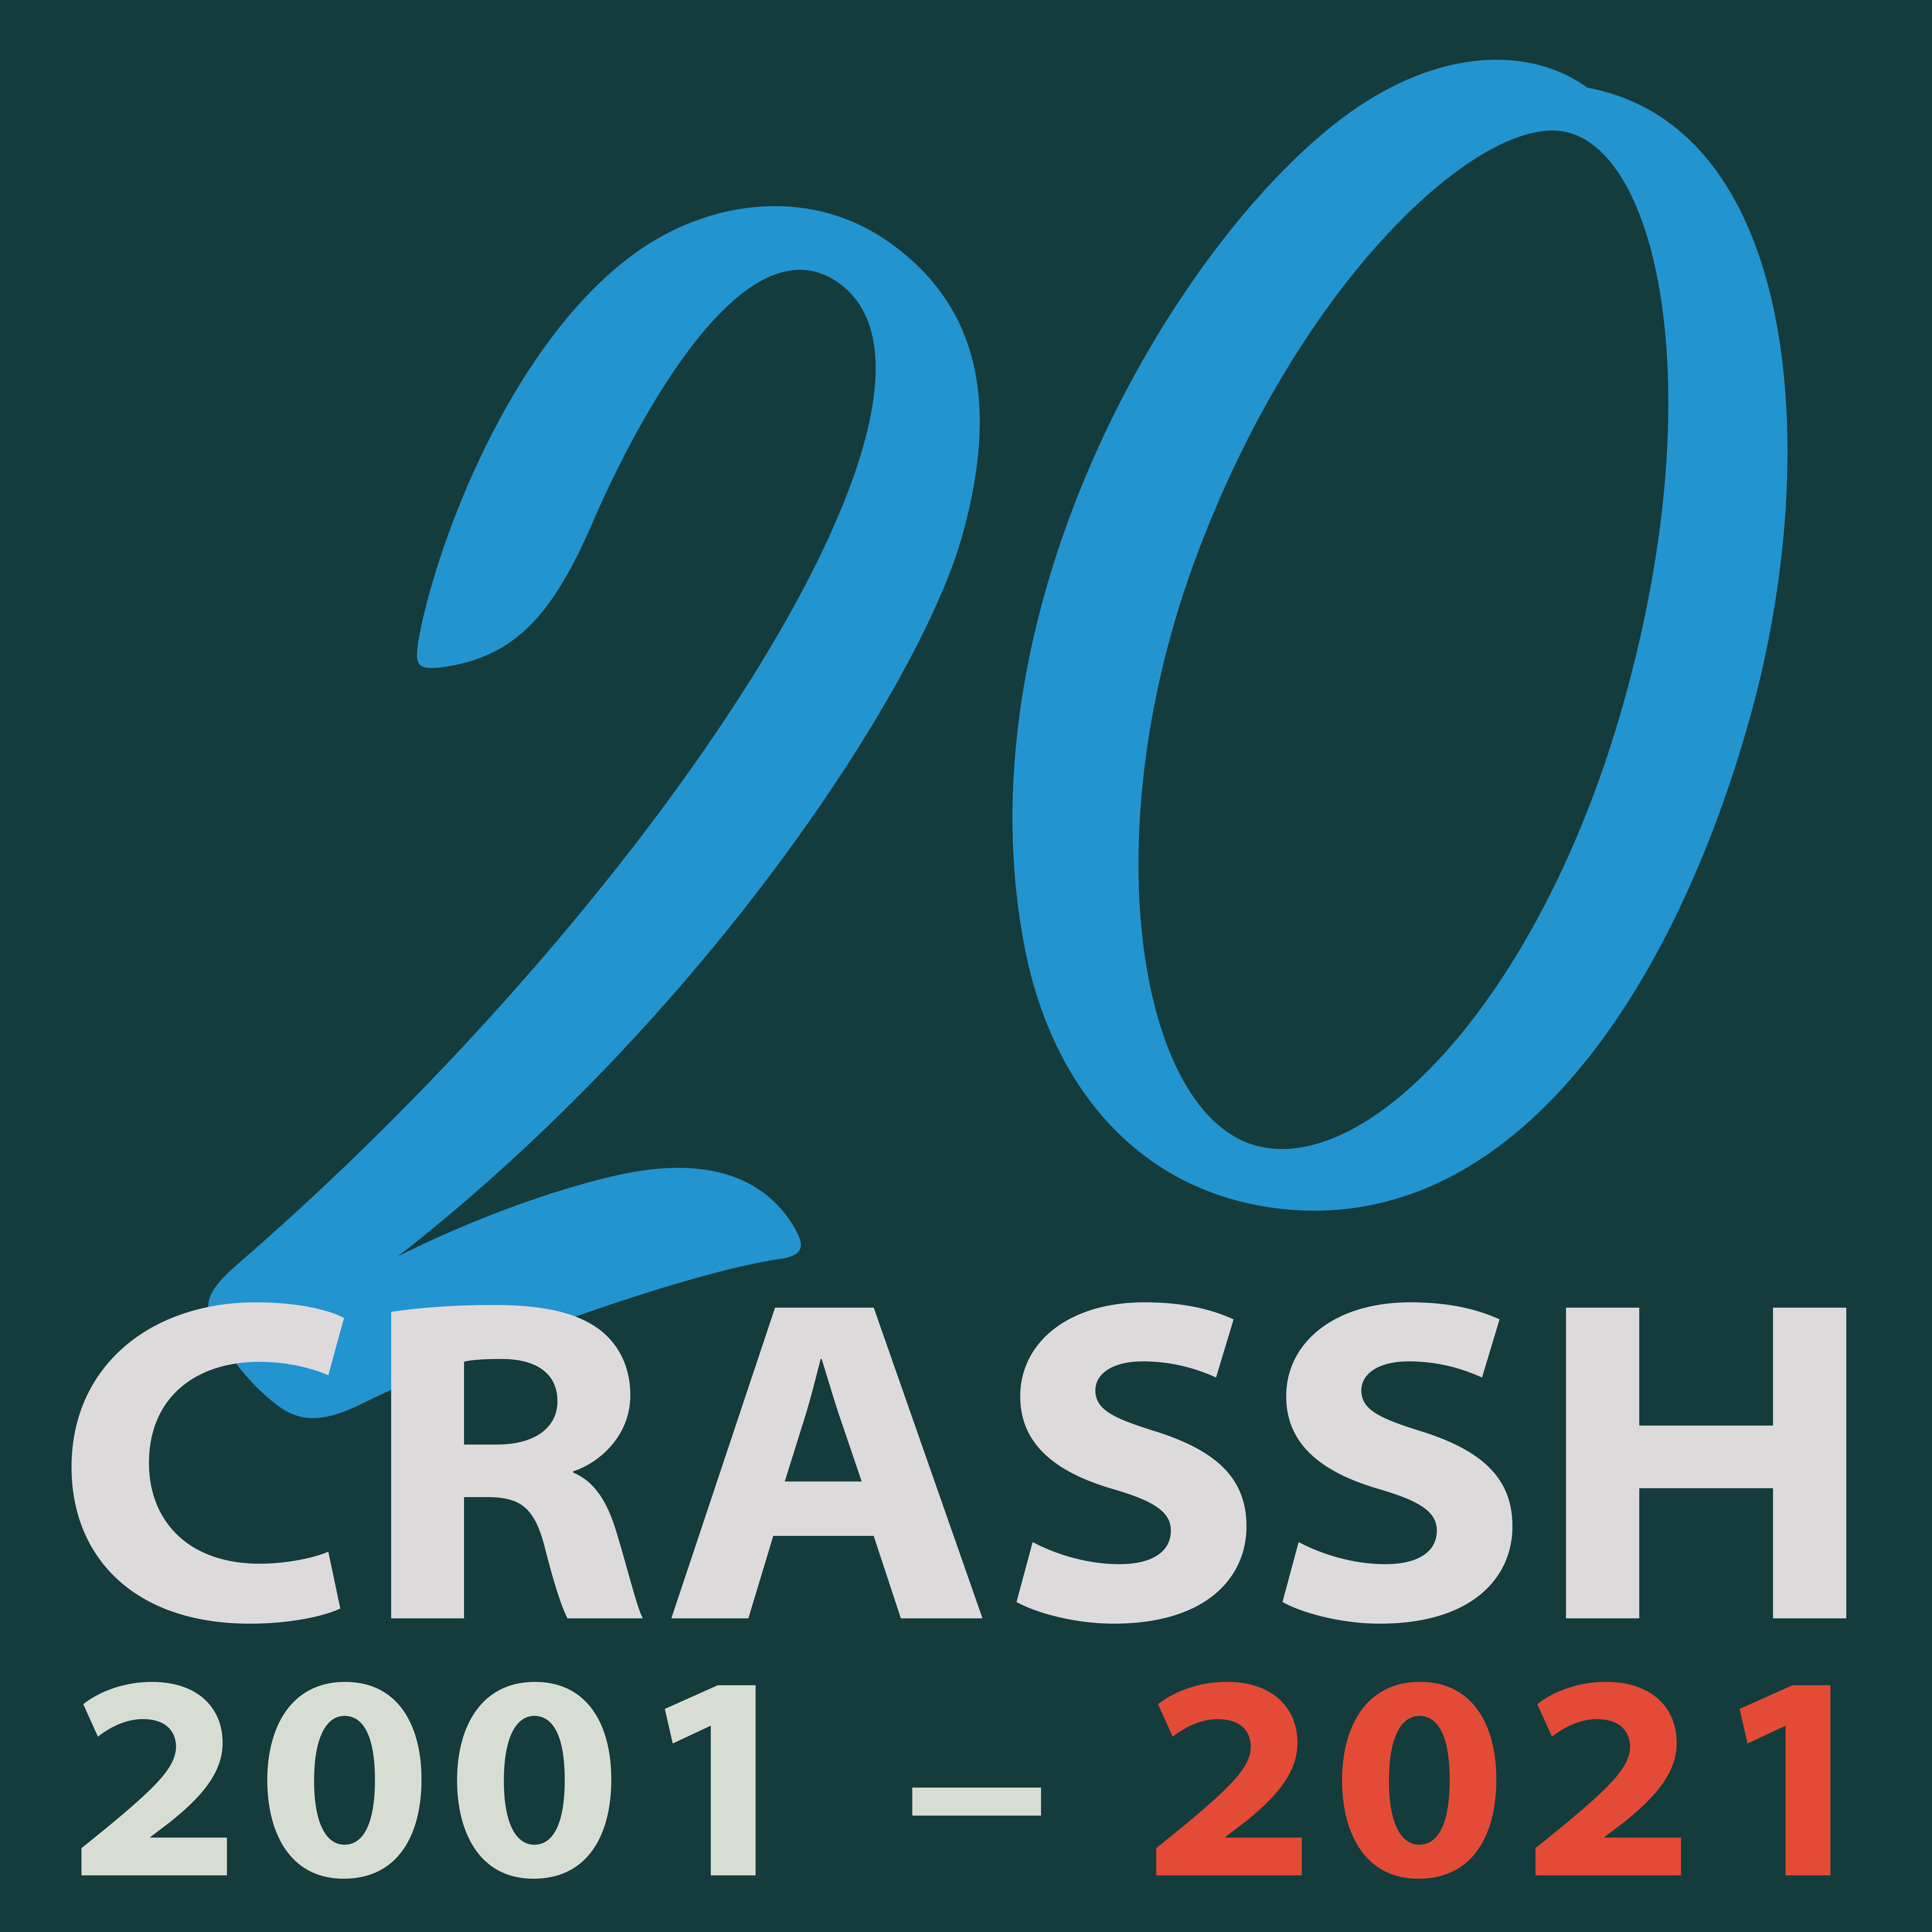 CRASSH logo